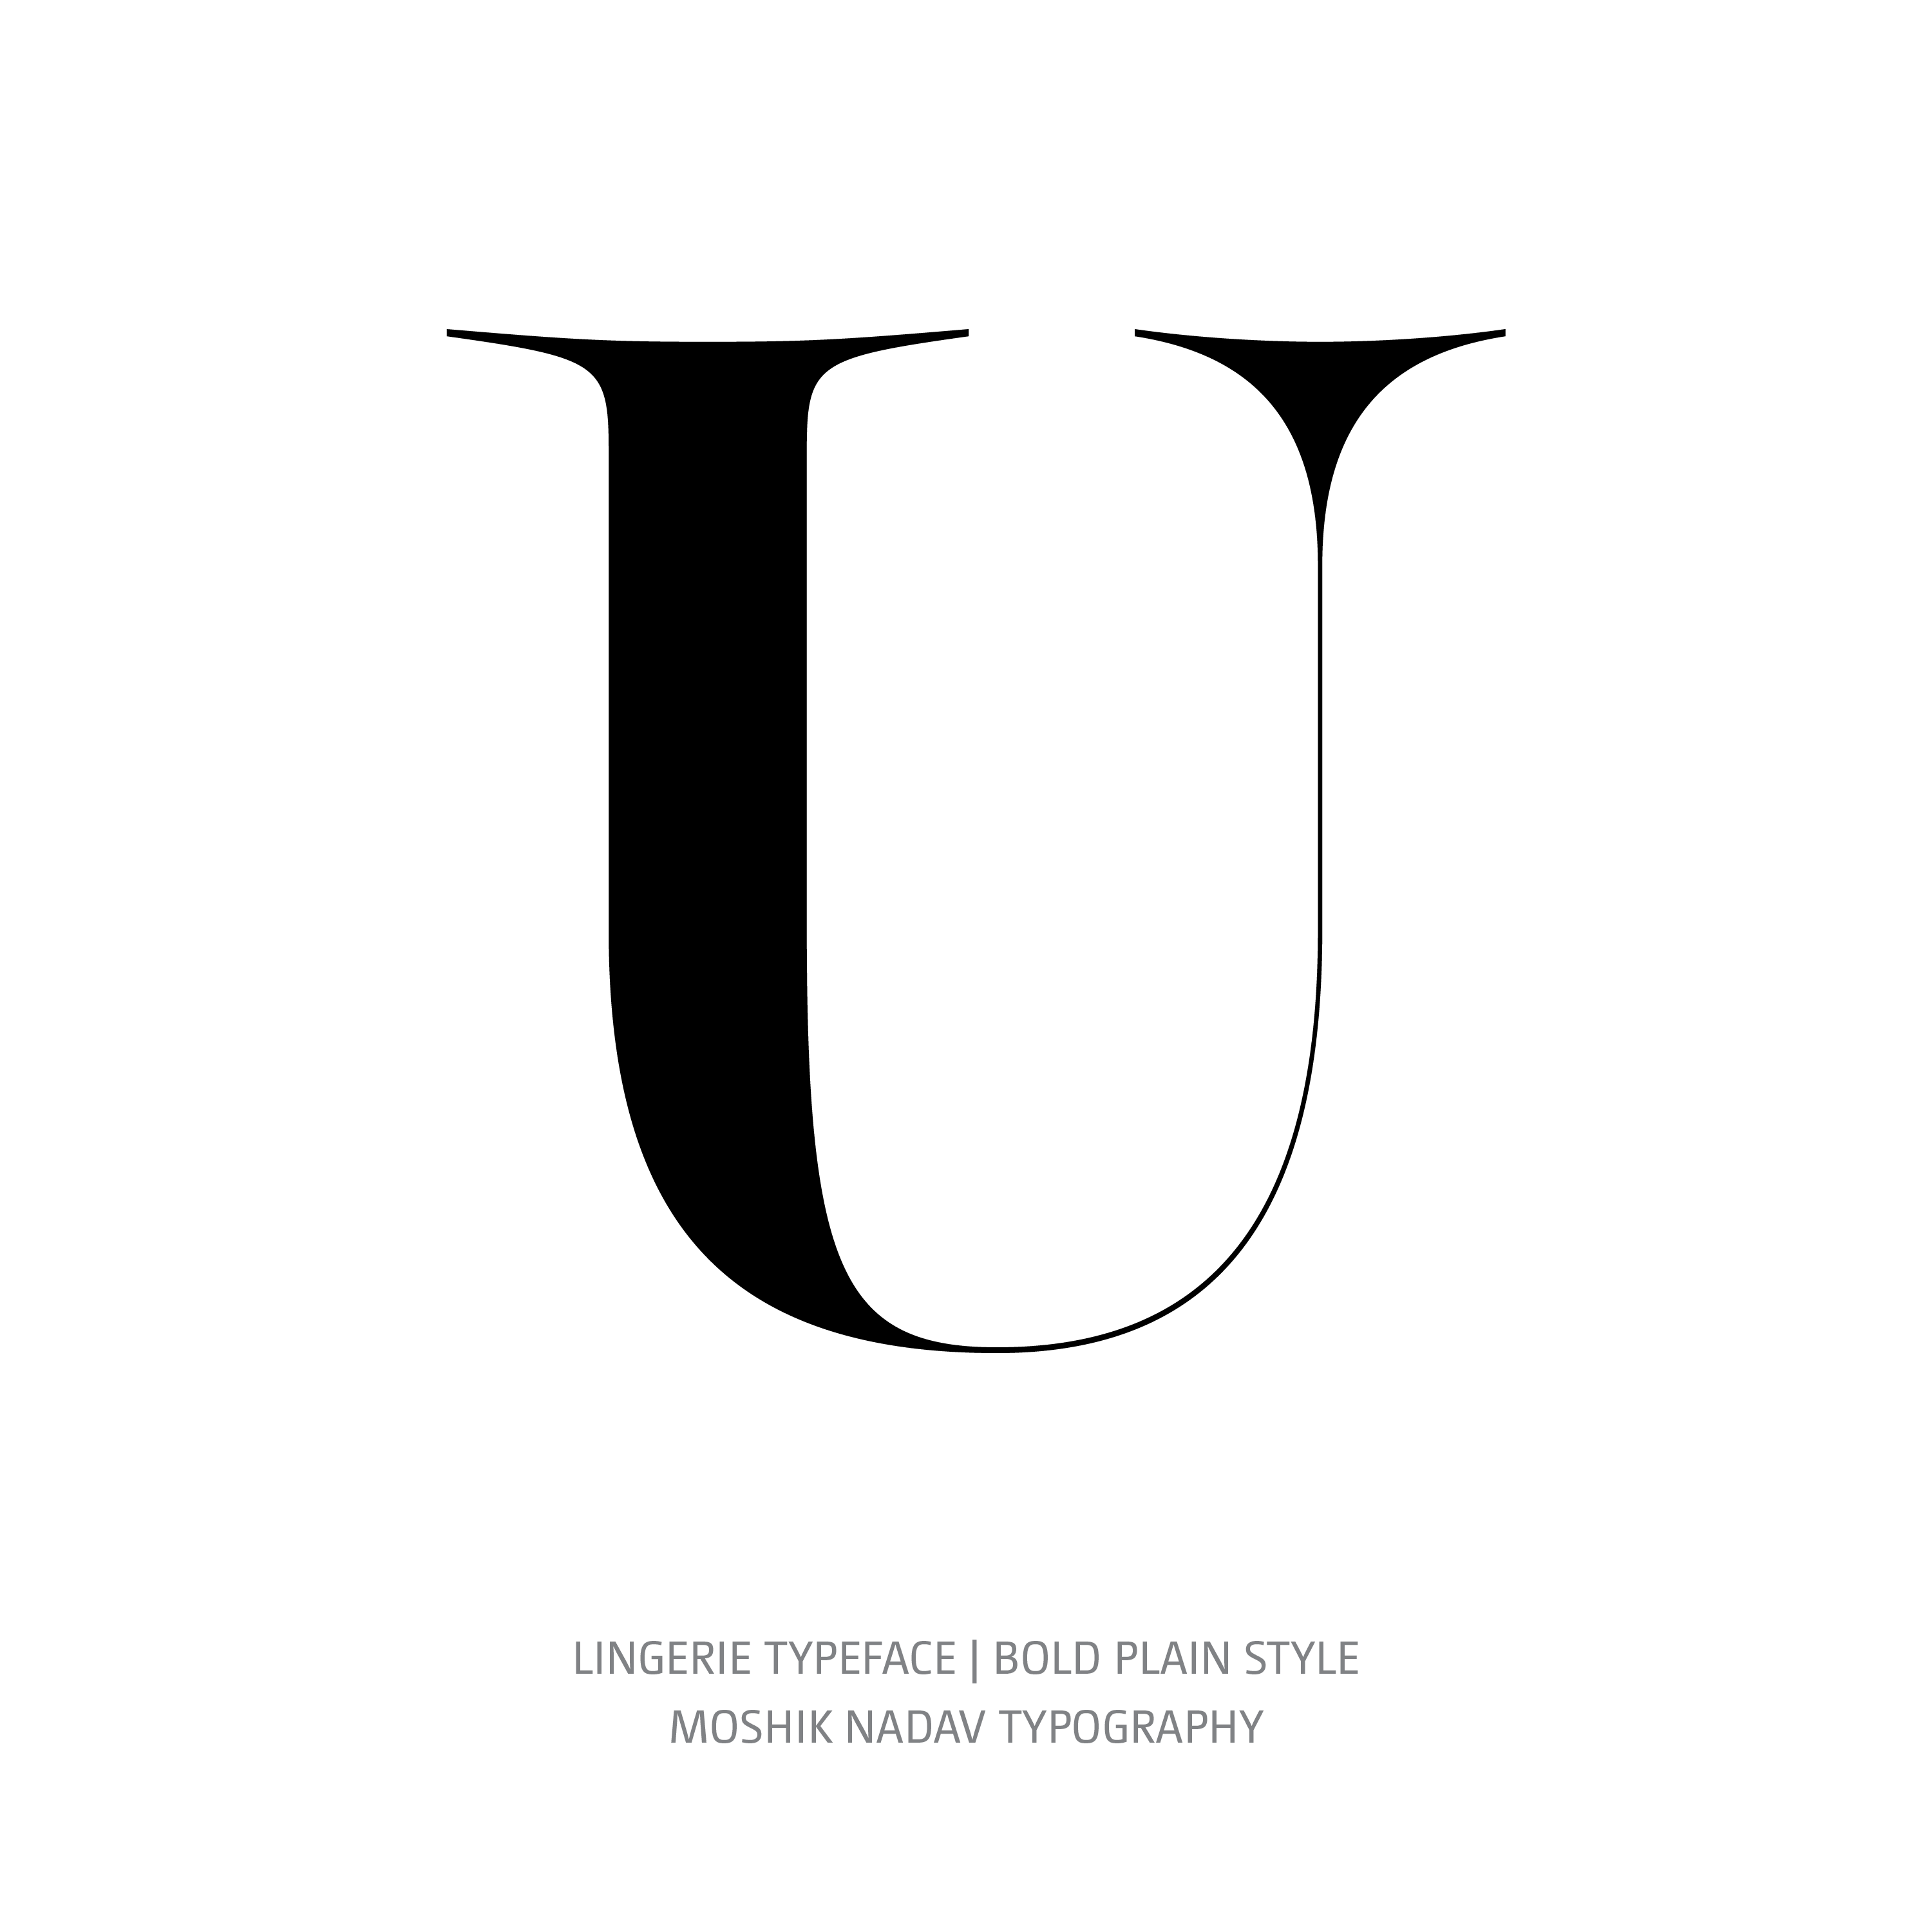 Lingerie Typeface Bold Plain U